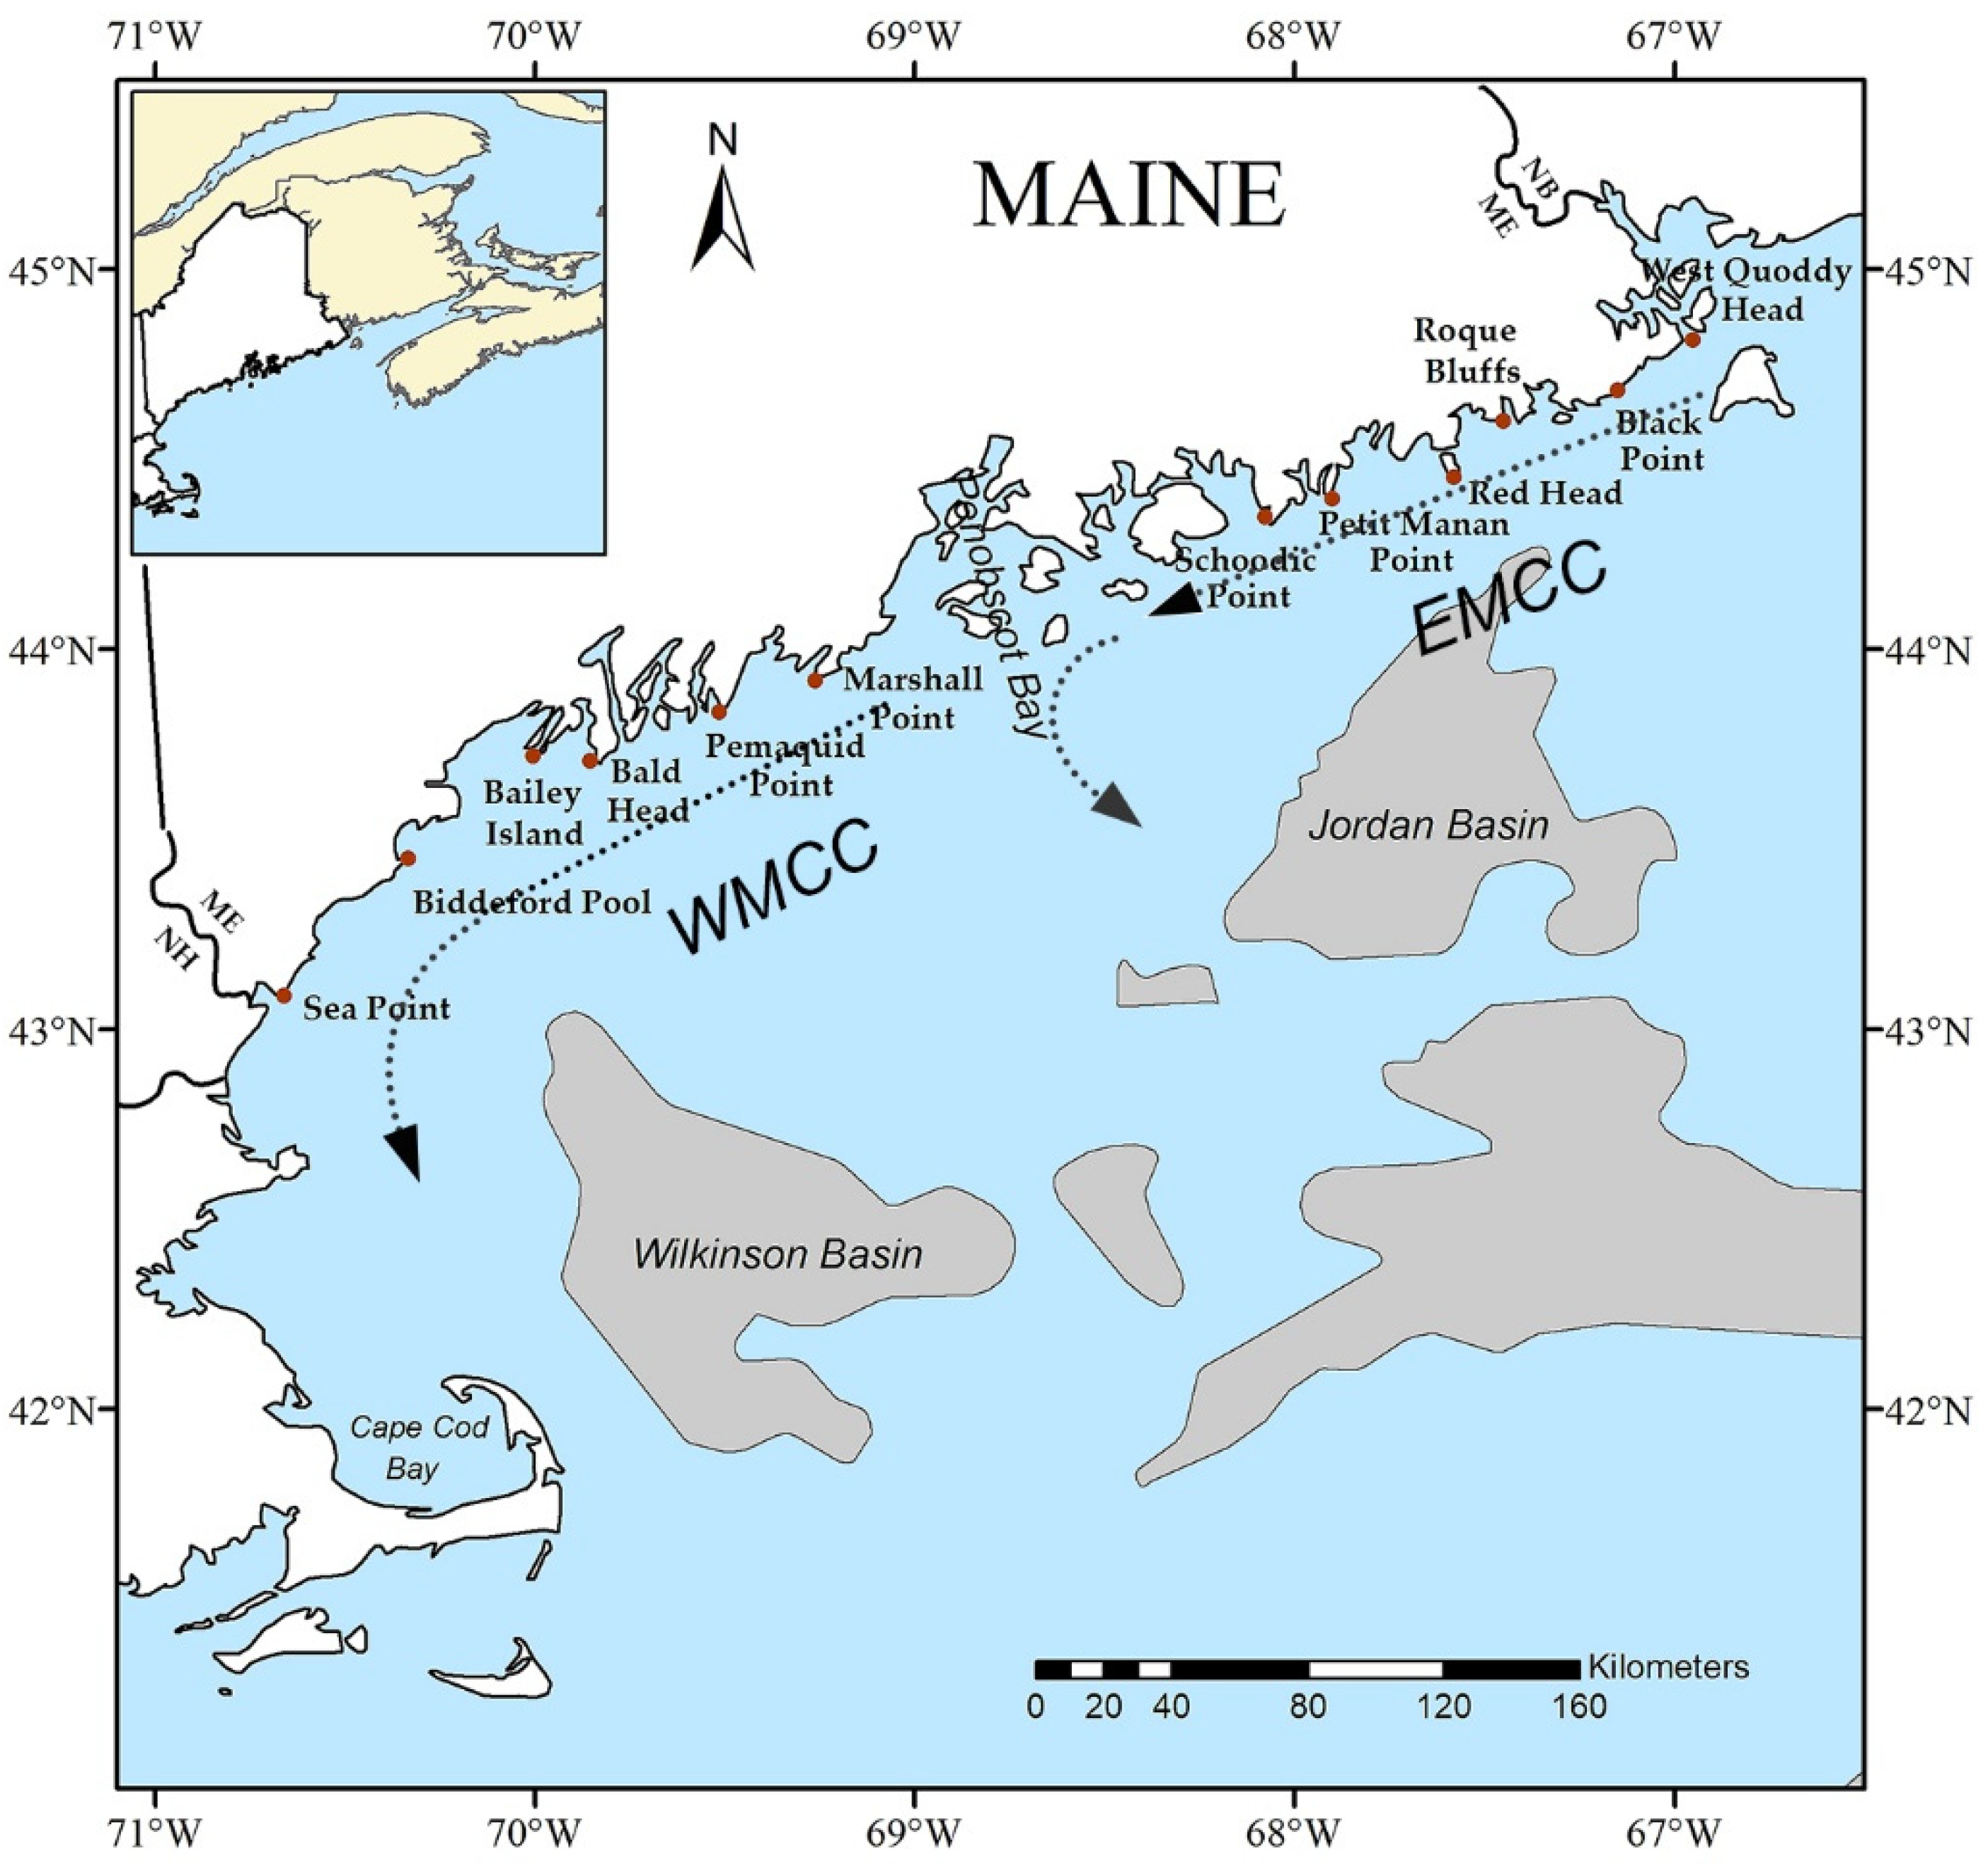 Gulf of Maine - Wikipedia